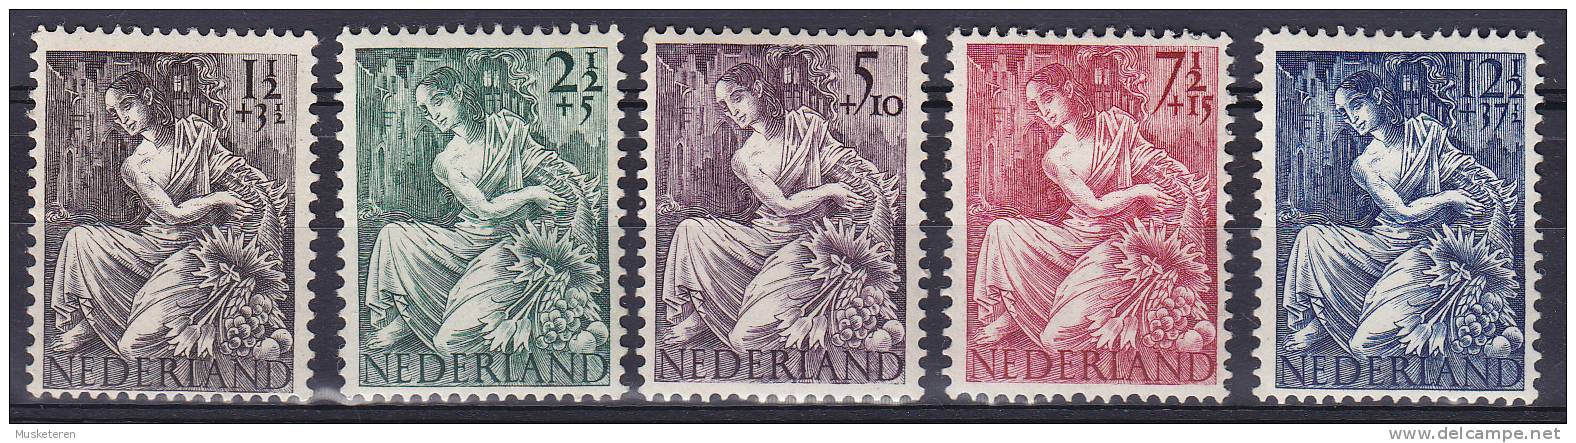 Netherlands 1946 Mi. 457-61 Kriegopferhilfe Fruengestalt Mit Füllhorn Vor Ruinen Complete Set MH* - Unused Stamps